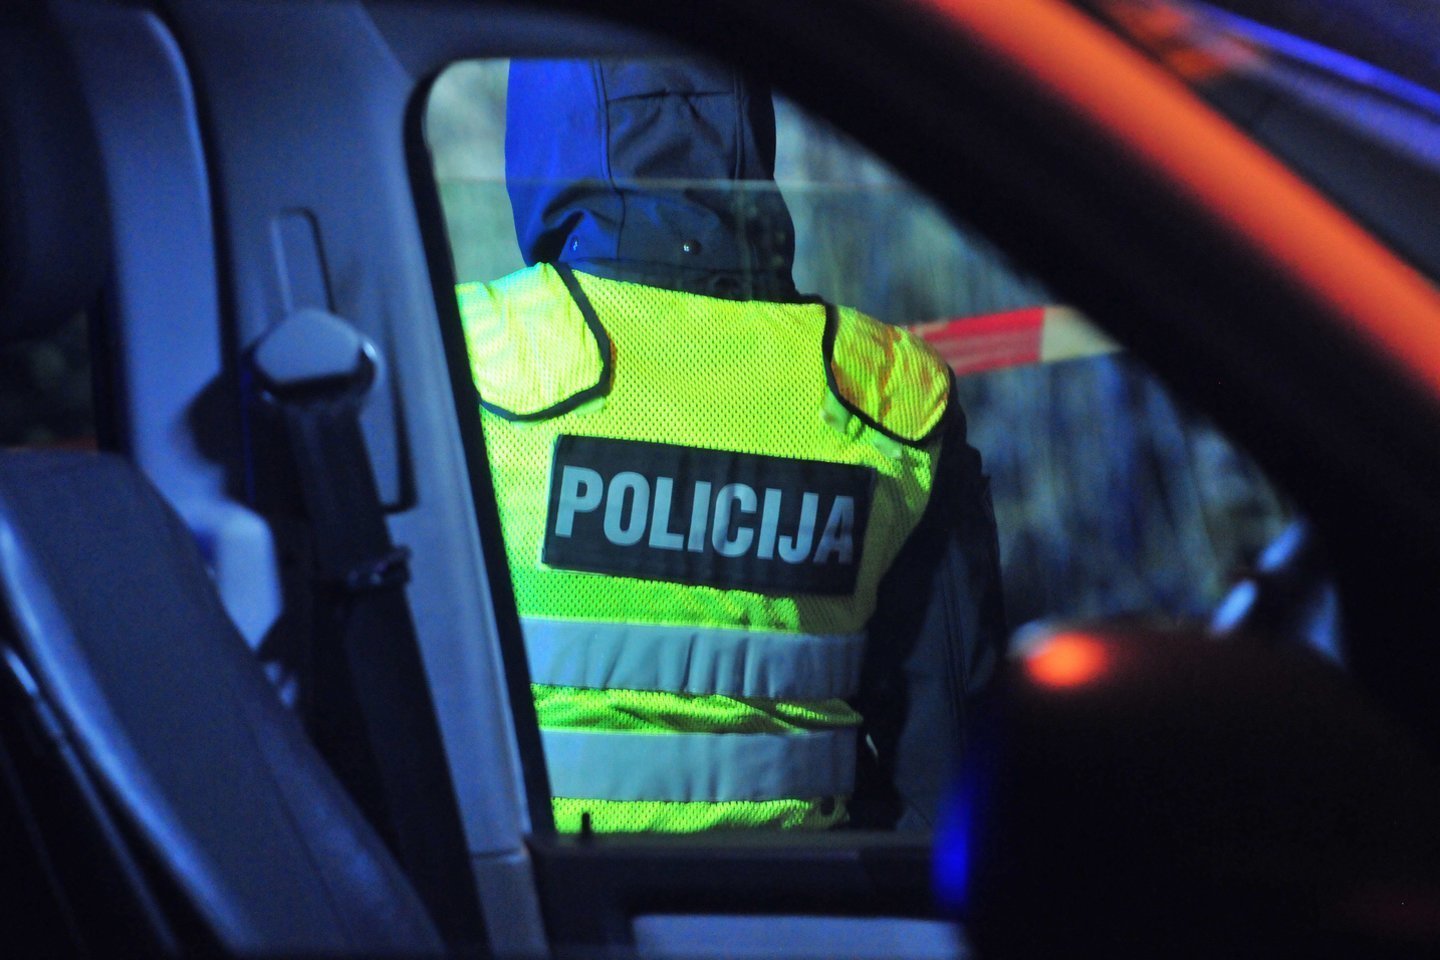  Policija ieško dviejų 17-mečių, pabėgusių iš globos namų Suvalkijoje. <br> A. Vaitkevičiaus asociatyvioji nuotr. 